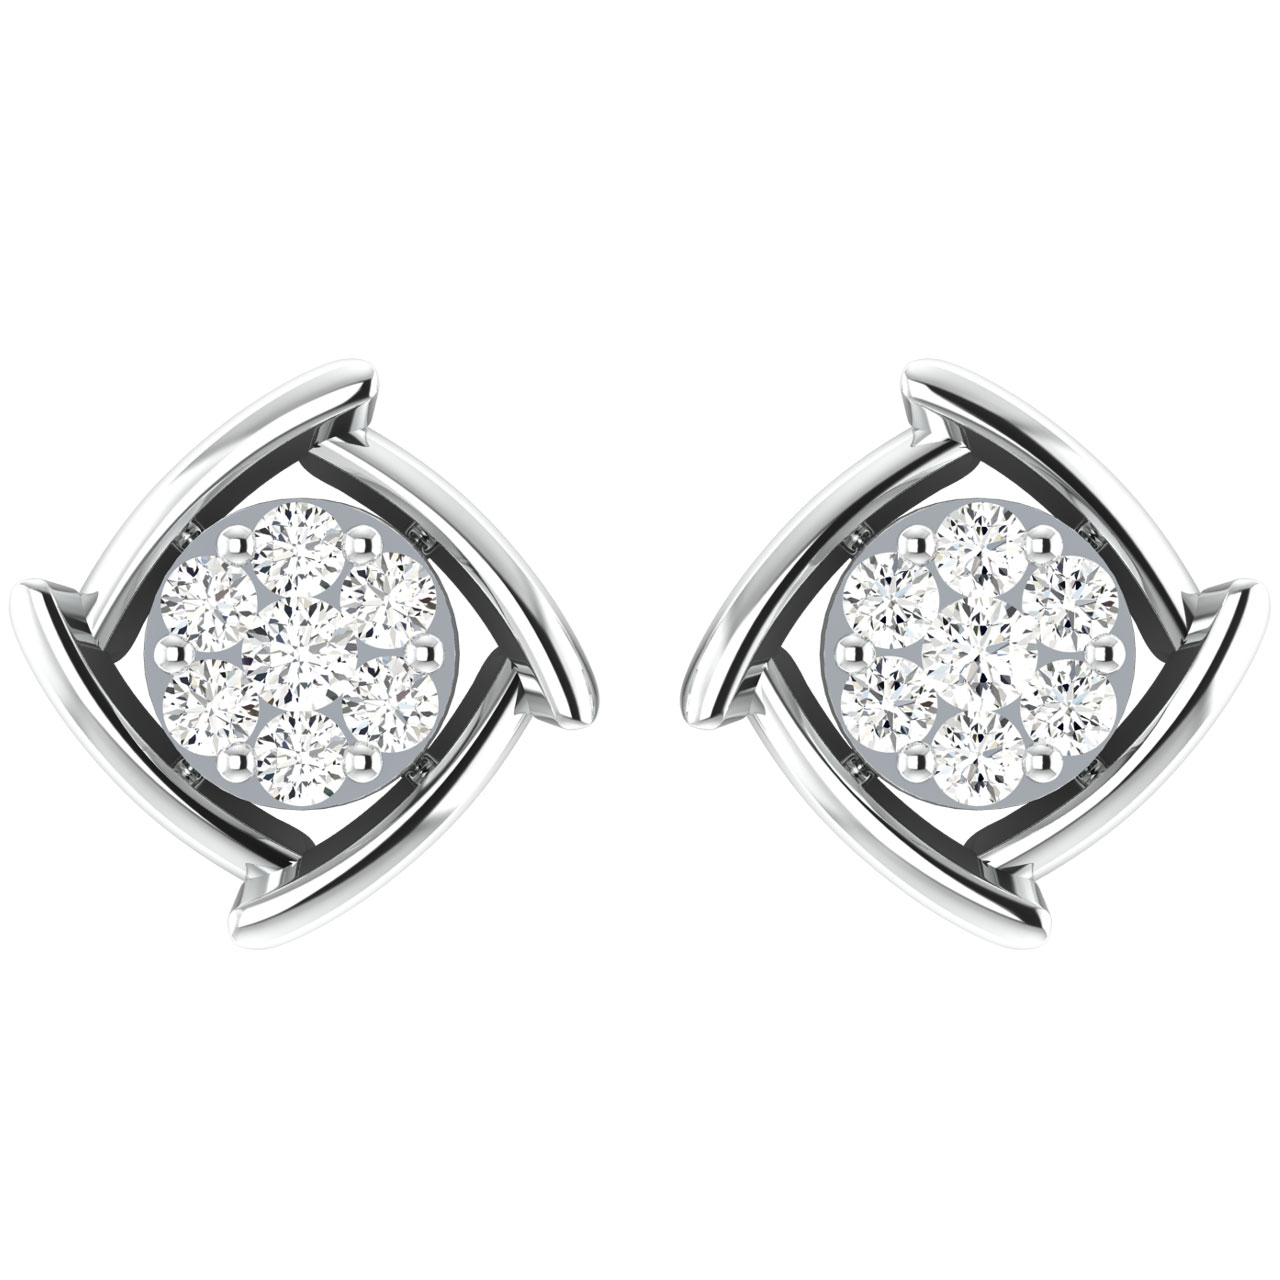 Kano Round Diamond Stud Earrings